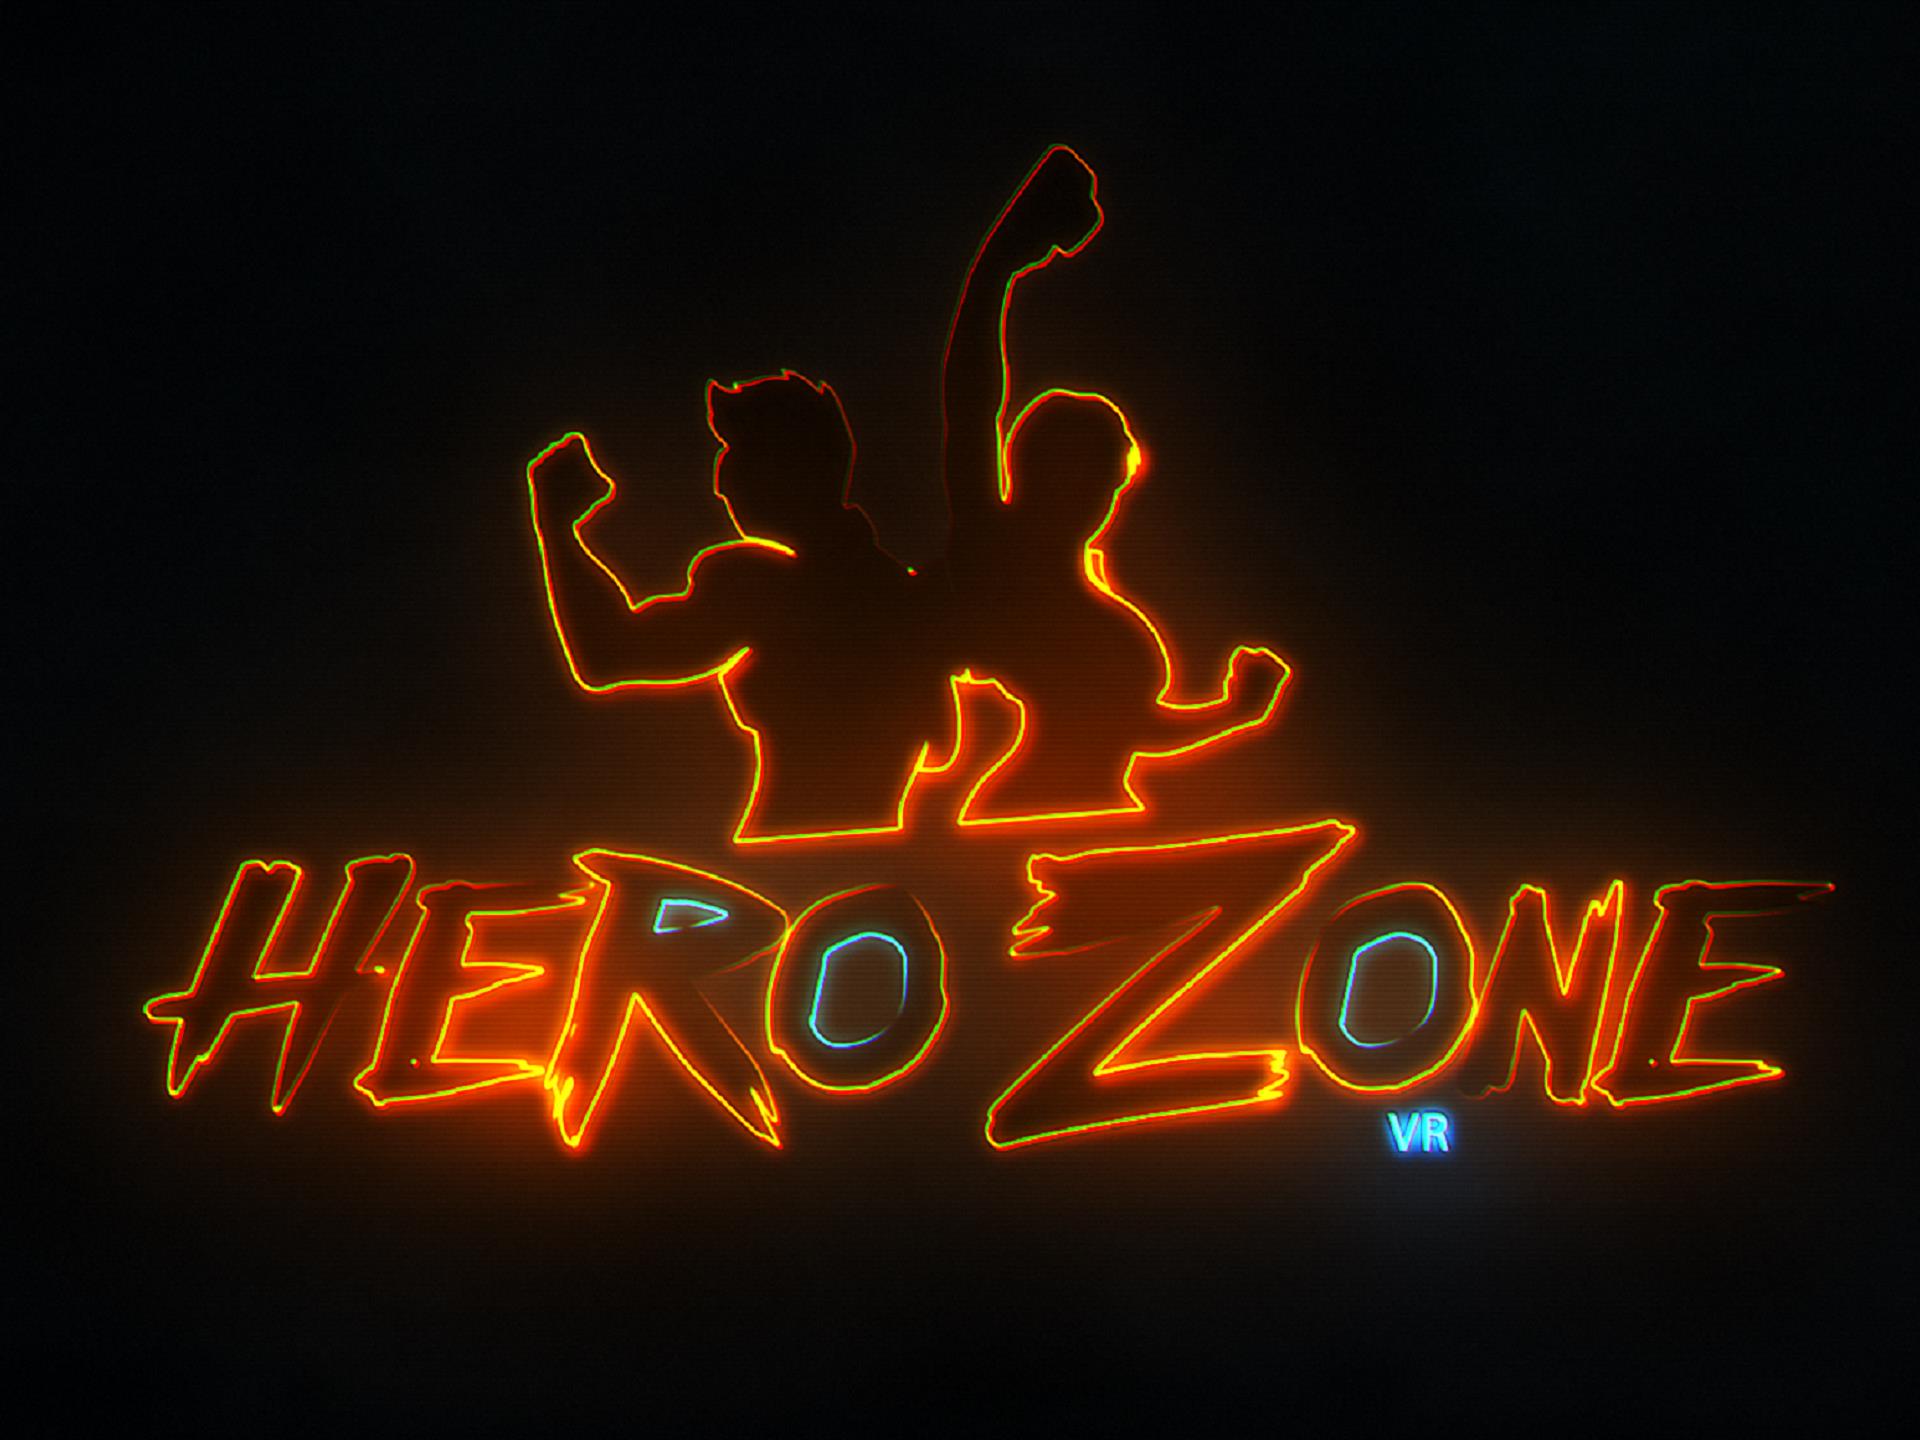 Hero Zone VR wireless arena